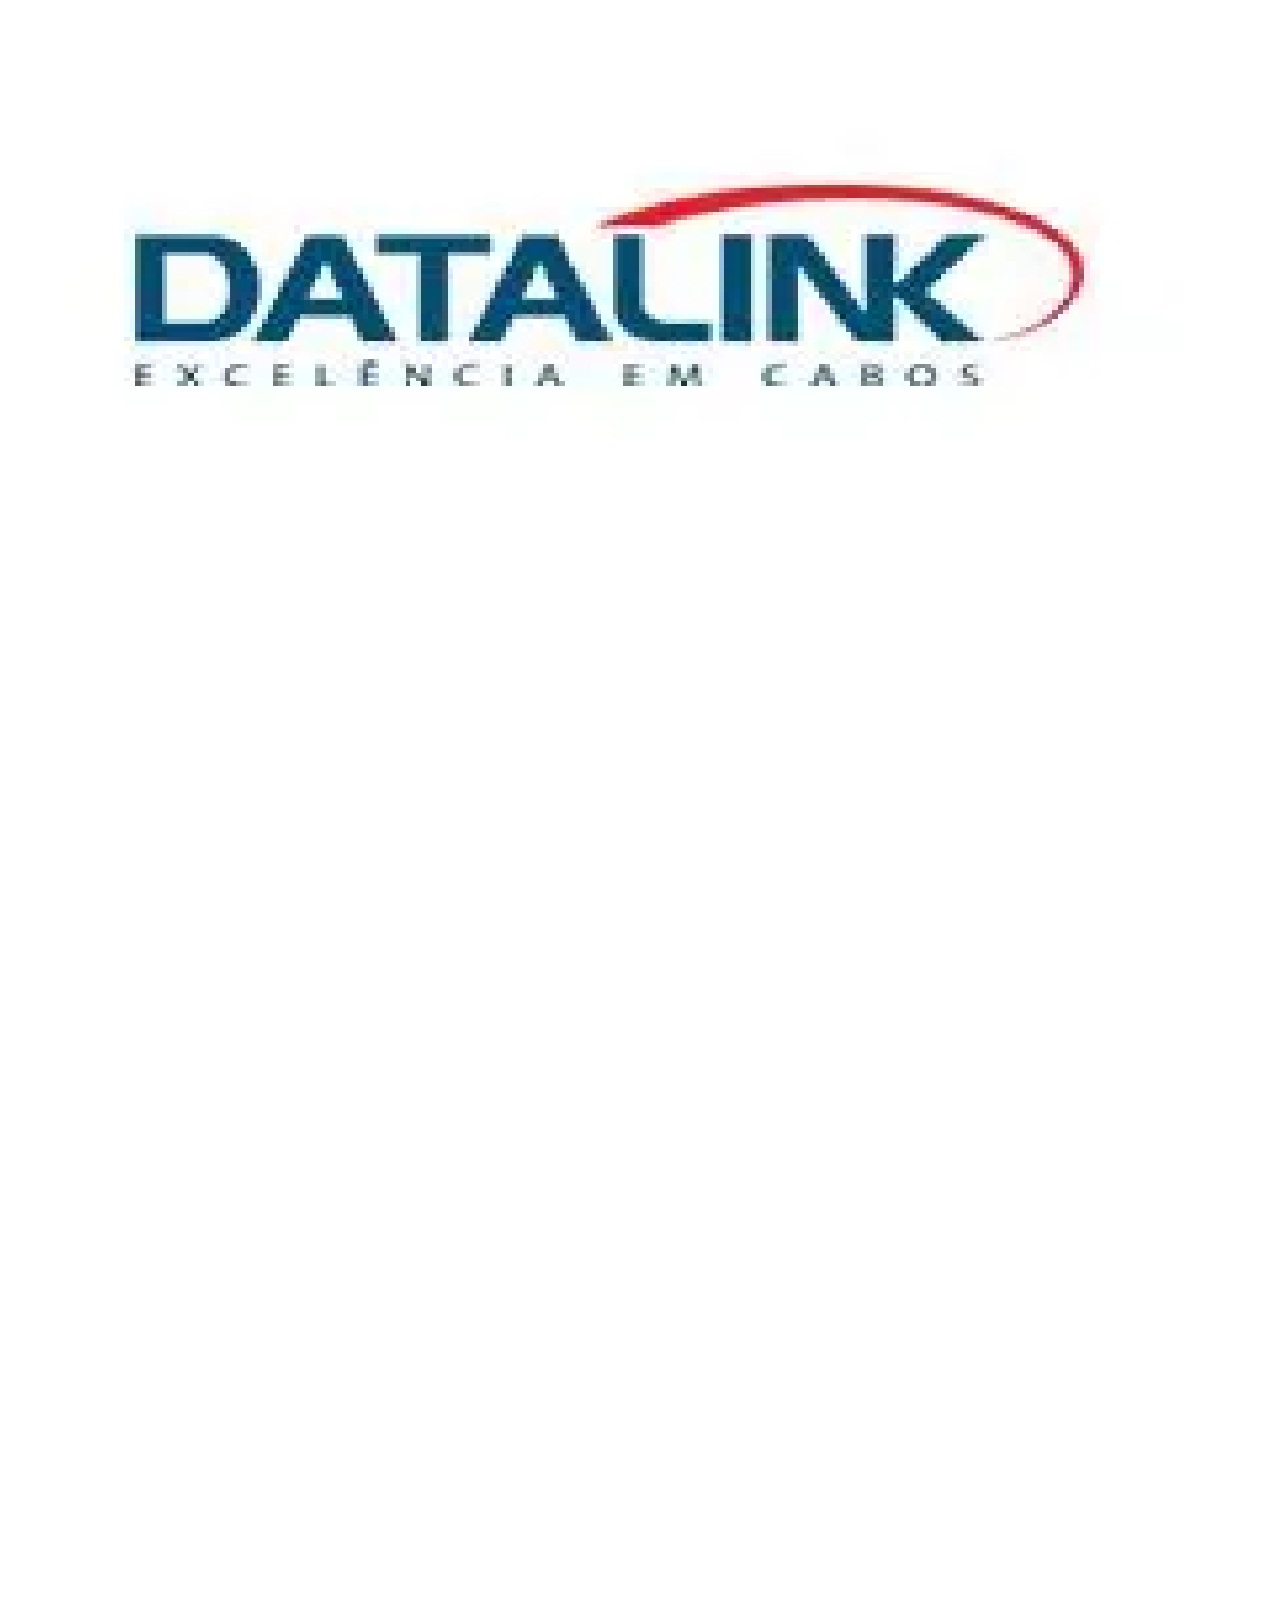 Datalink